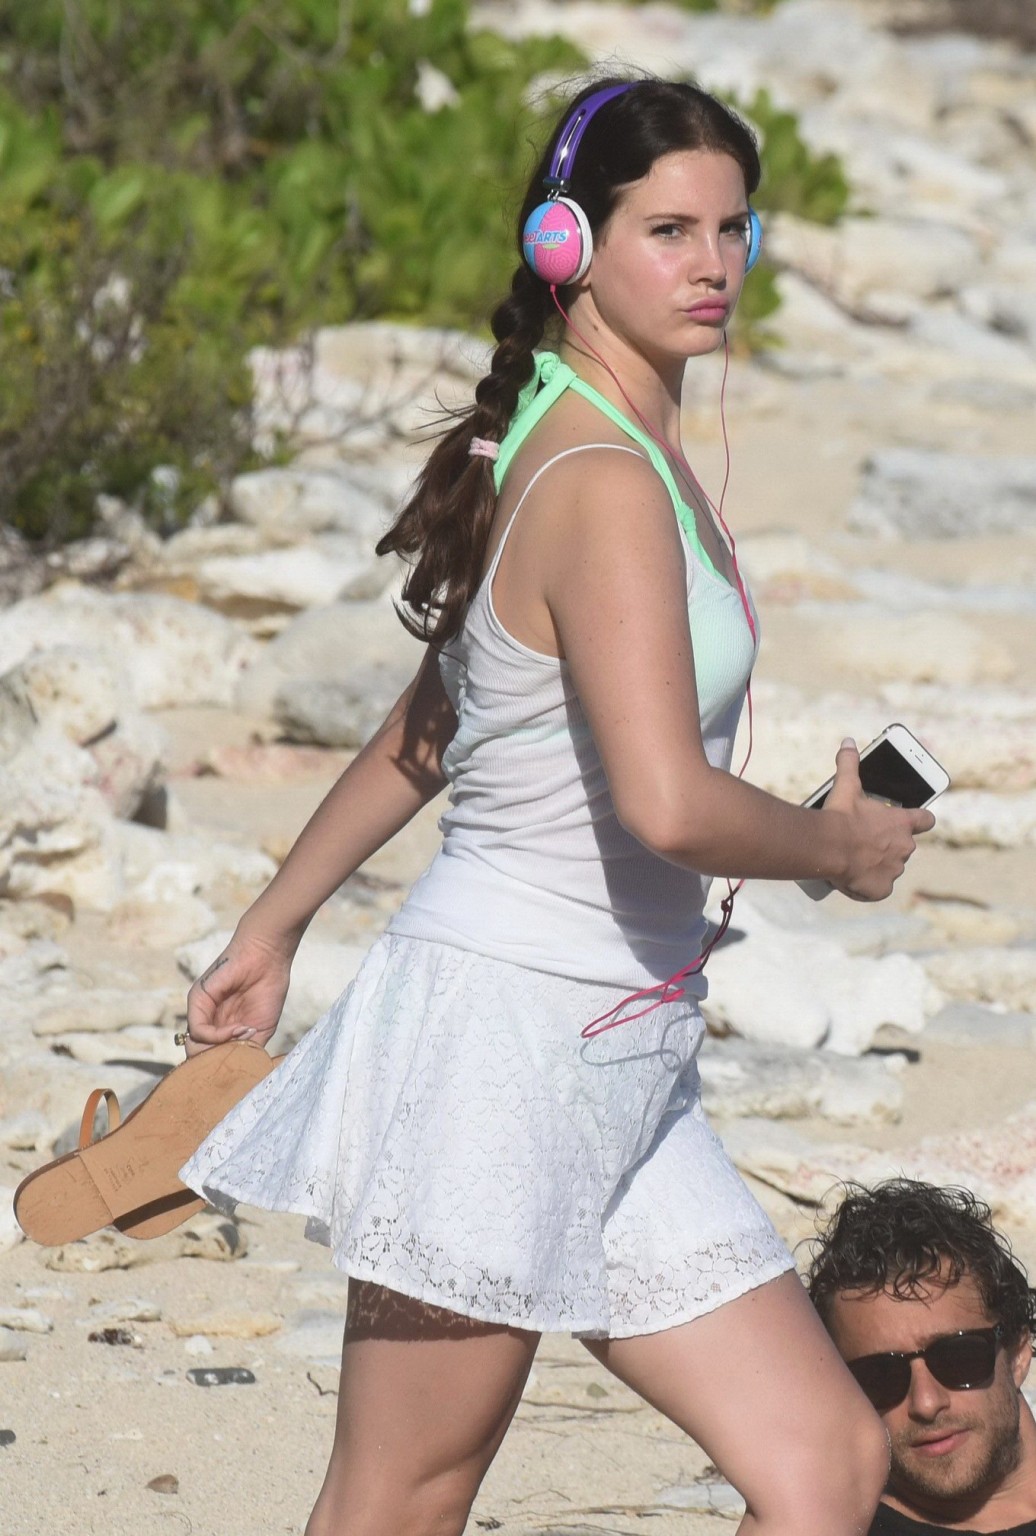 Lana Del Rey wearing green bikini at the beach in StBarts #75176830